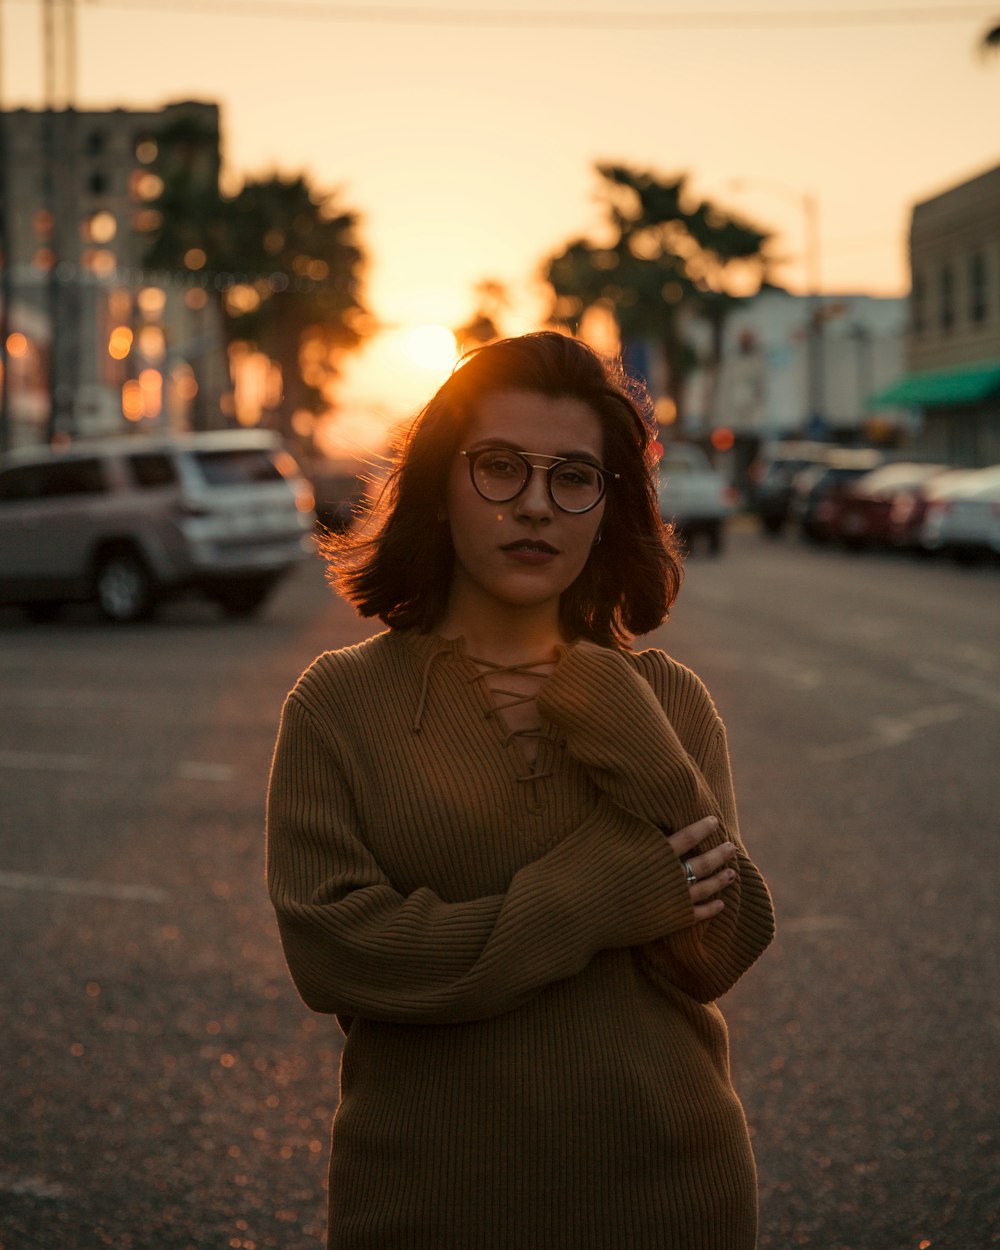 Frau steht während der goldenen Stunde auf der Straße in der Nähe von Fahrzeugen